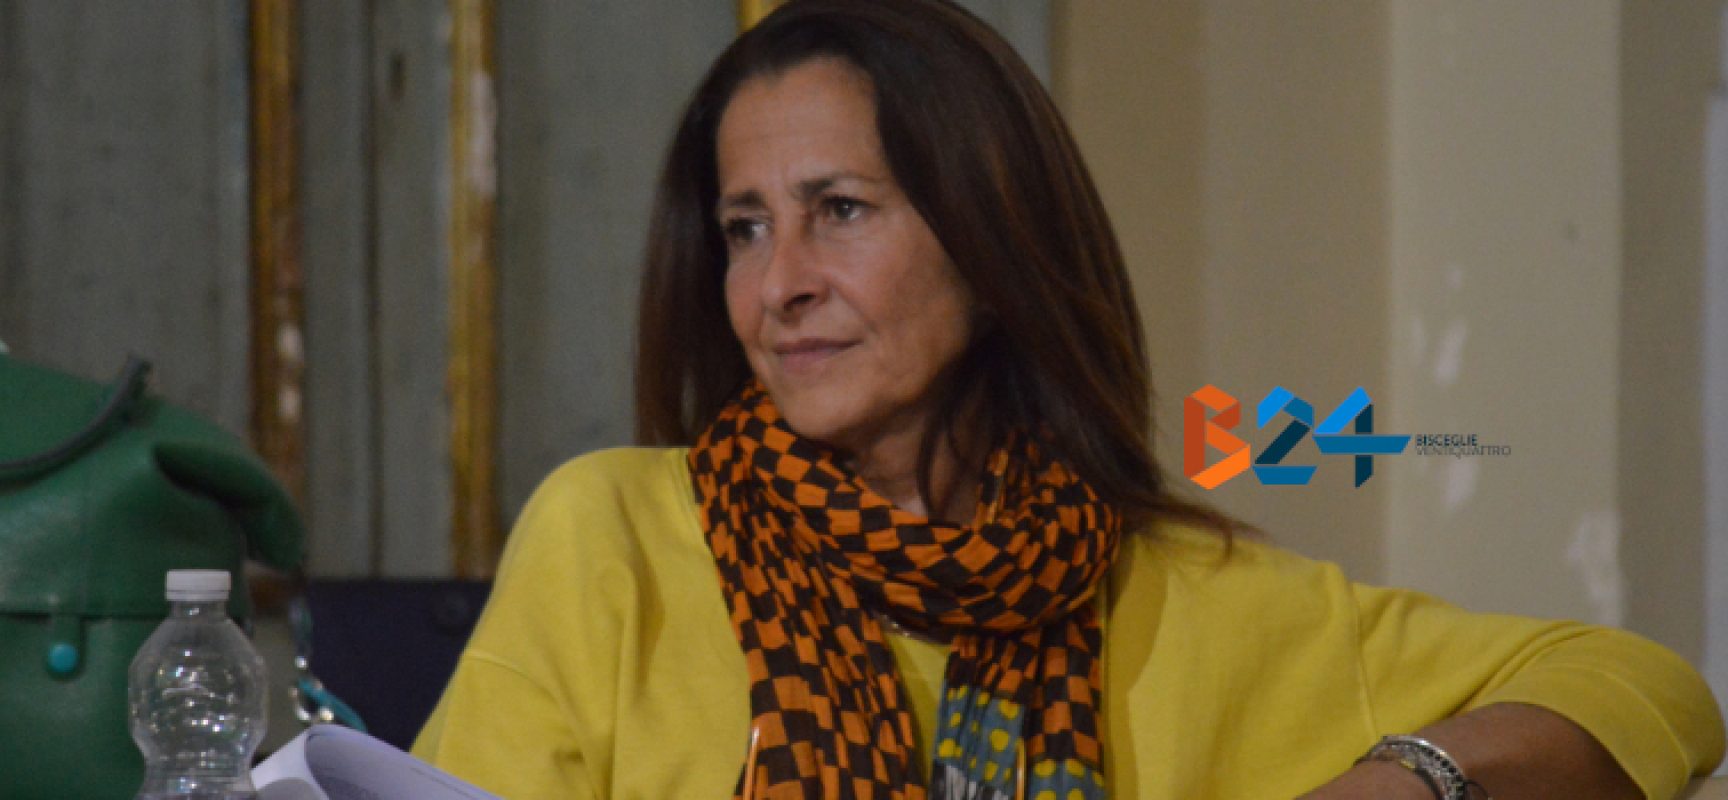 Vittoria Sasso si dimette da assessore: “Delusione verso progetto civico mai realizzato”